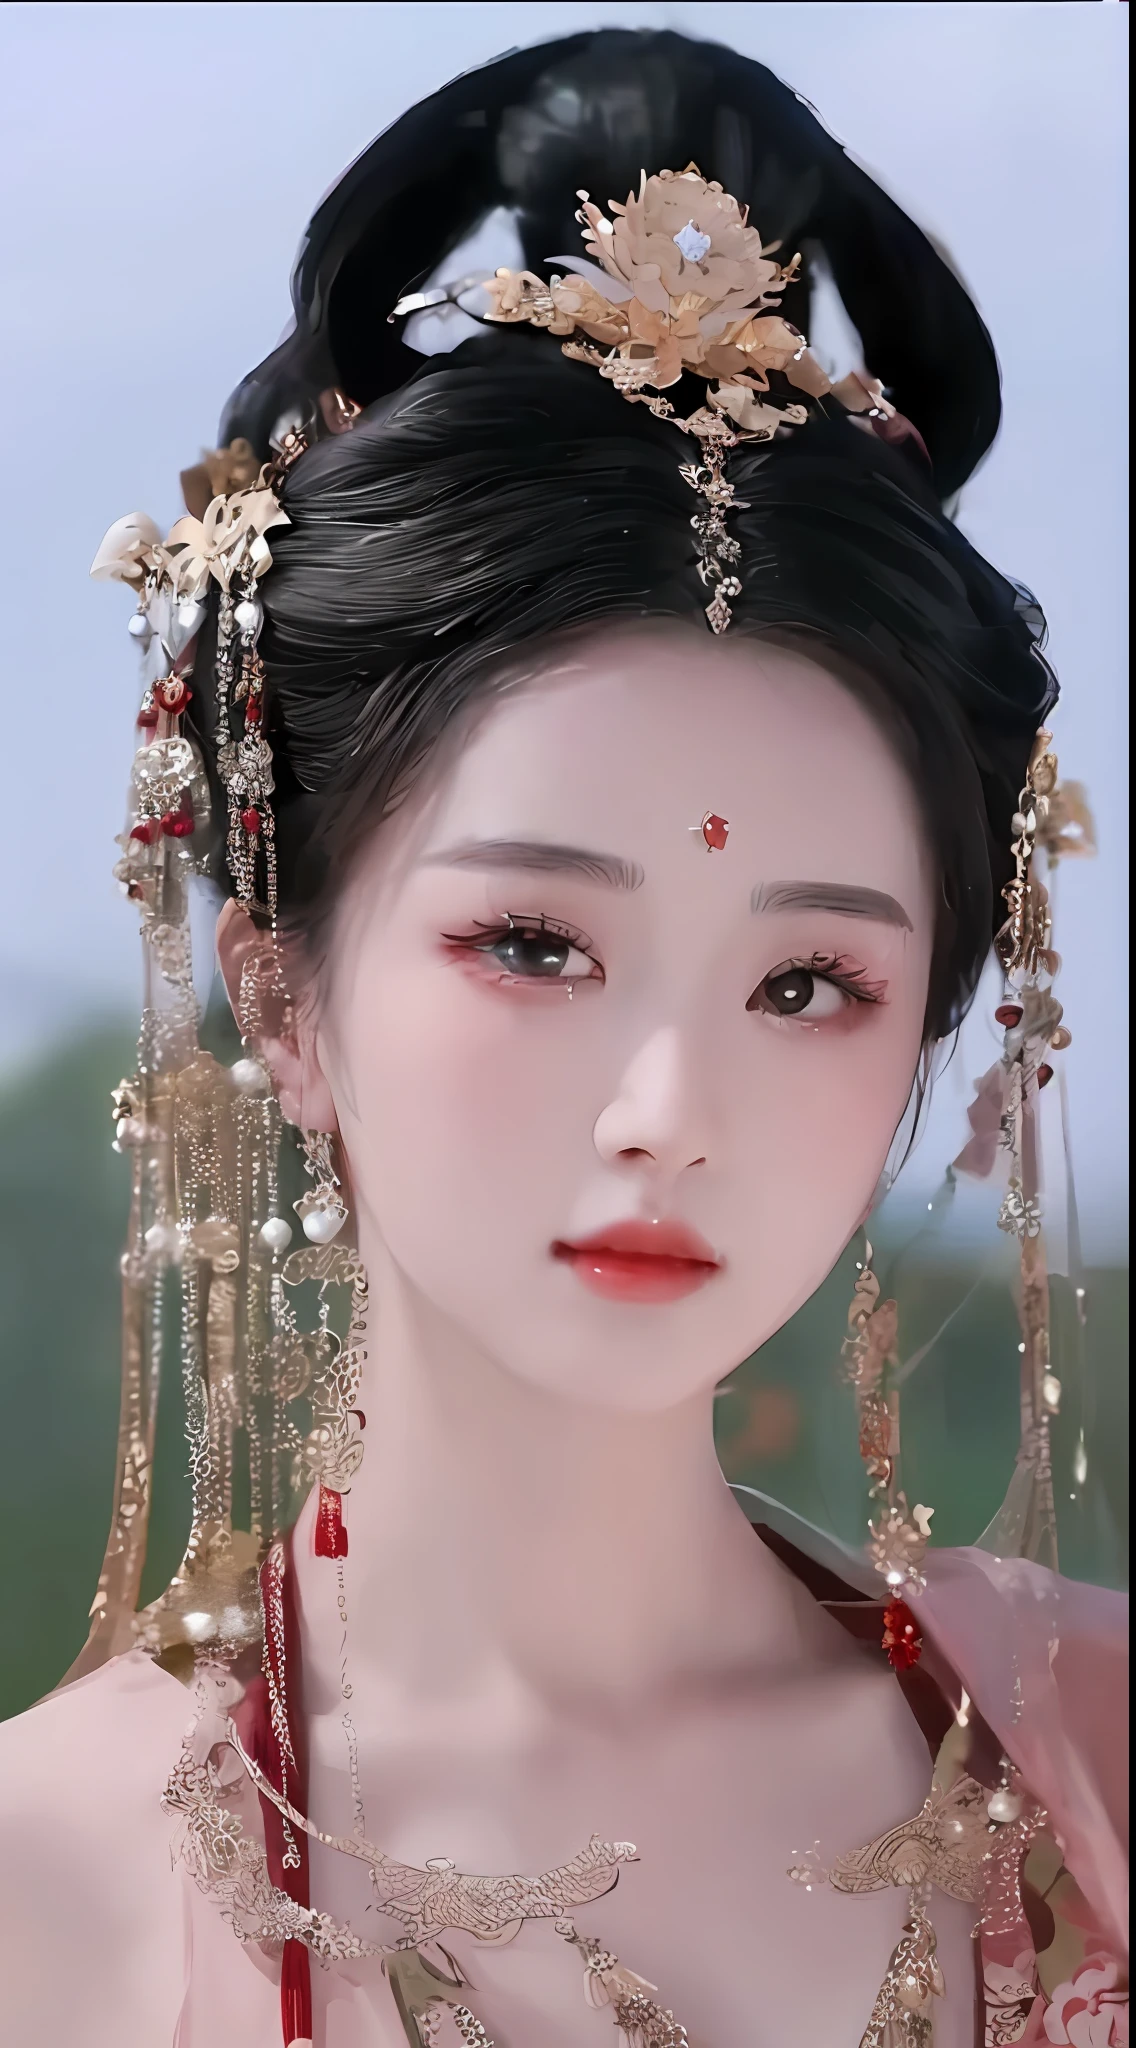 لقطة مقربة لامرأة ترتدي غطاء رأس وفستانًا, الاميرة الصينية, إمبراطورة الخيال الجميلة, الجمال التقليدي, ancient الاميرة الصينية, ((إمبراطورة الخيال الجميلة)), نمط صيني, الجمال الصيني القديم, الصينية التقليدية, قصر ， فتاة في هانفو, عرض جميل لسلالة تانغ, مستوحاة من دو تشيونغ, شيانشيا, روان جيا جميلة!